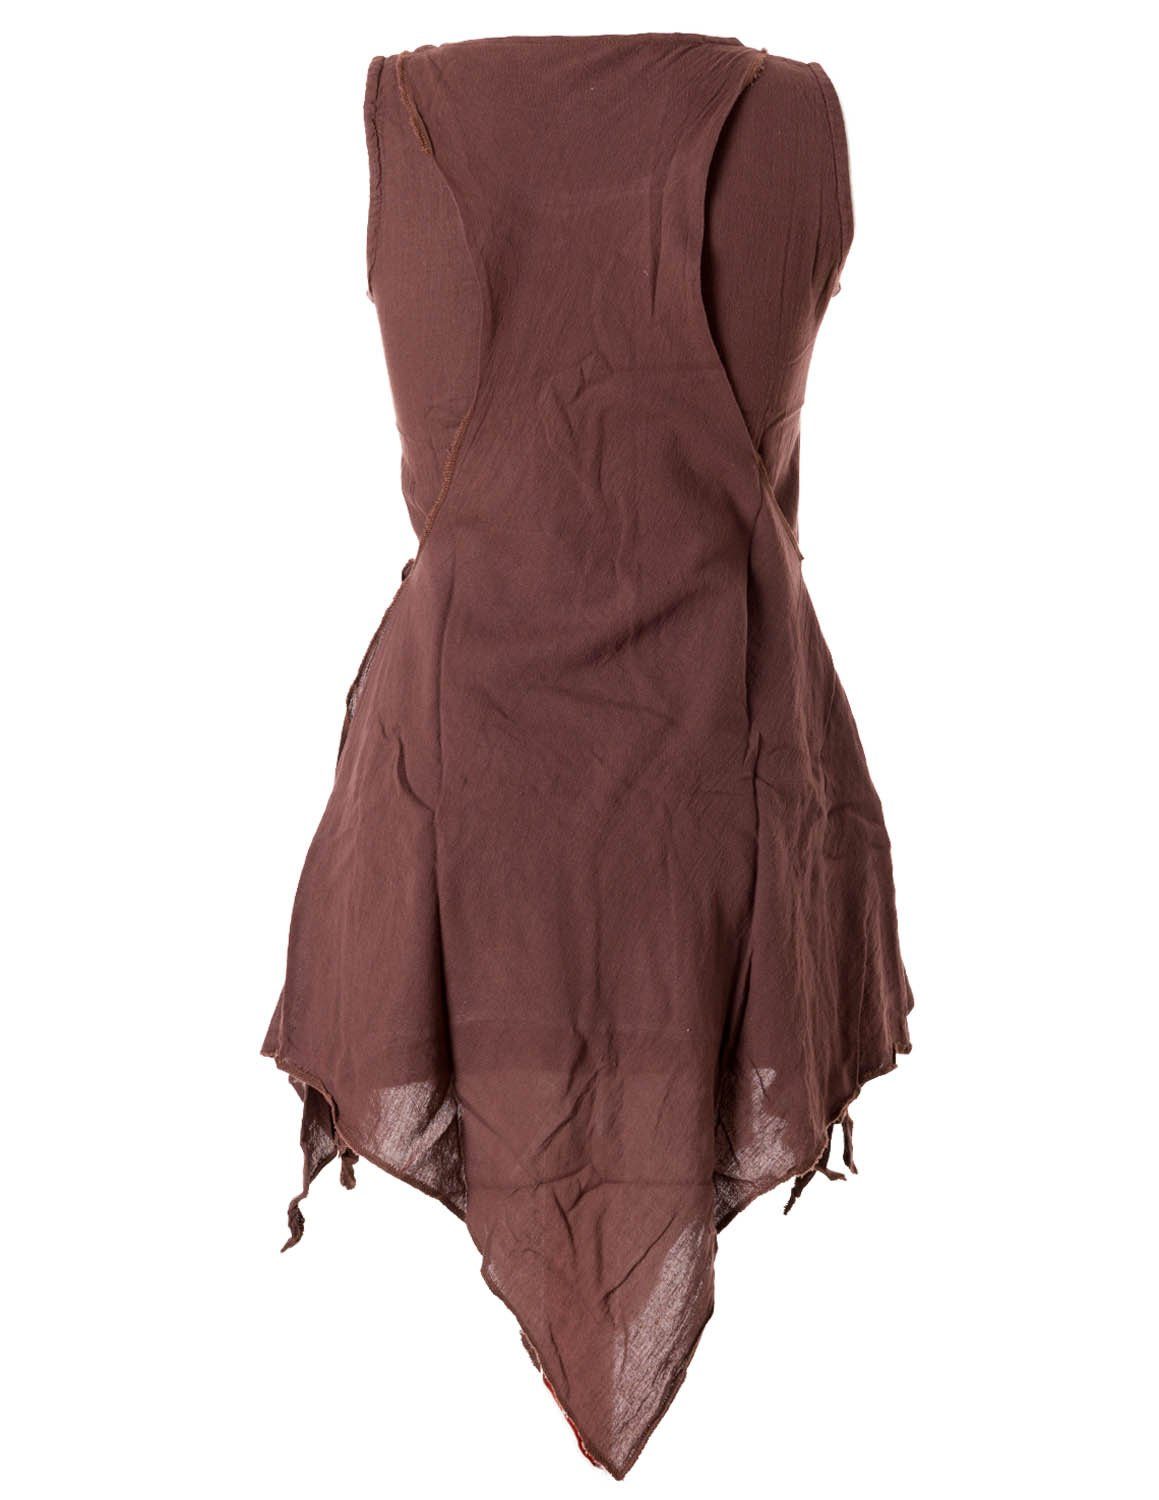 Vishes Tunikakleid Zipfeliges Lagenlook Shirt Goa Elfen, im Ethno, Tunika Used-Look Hippie, Style braun